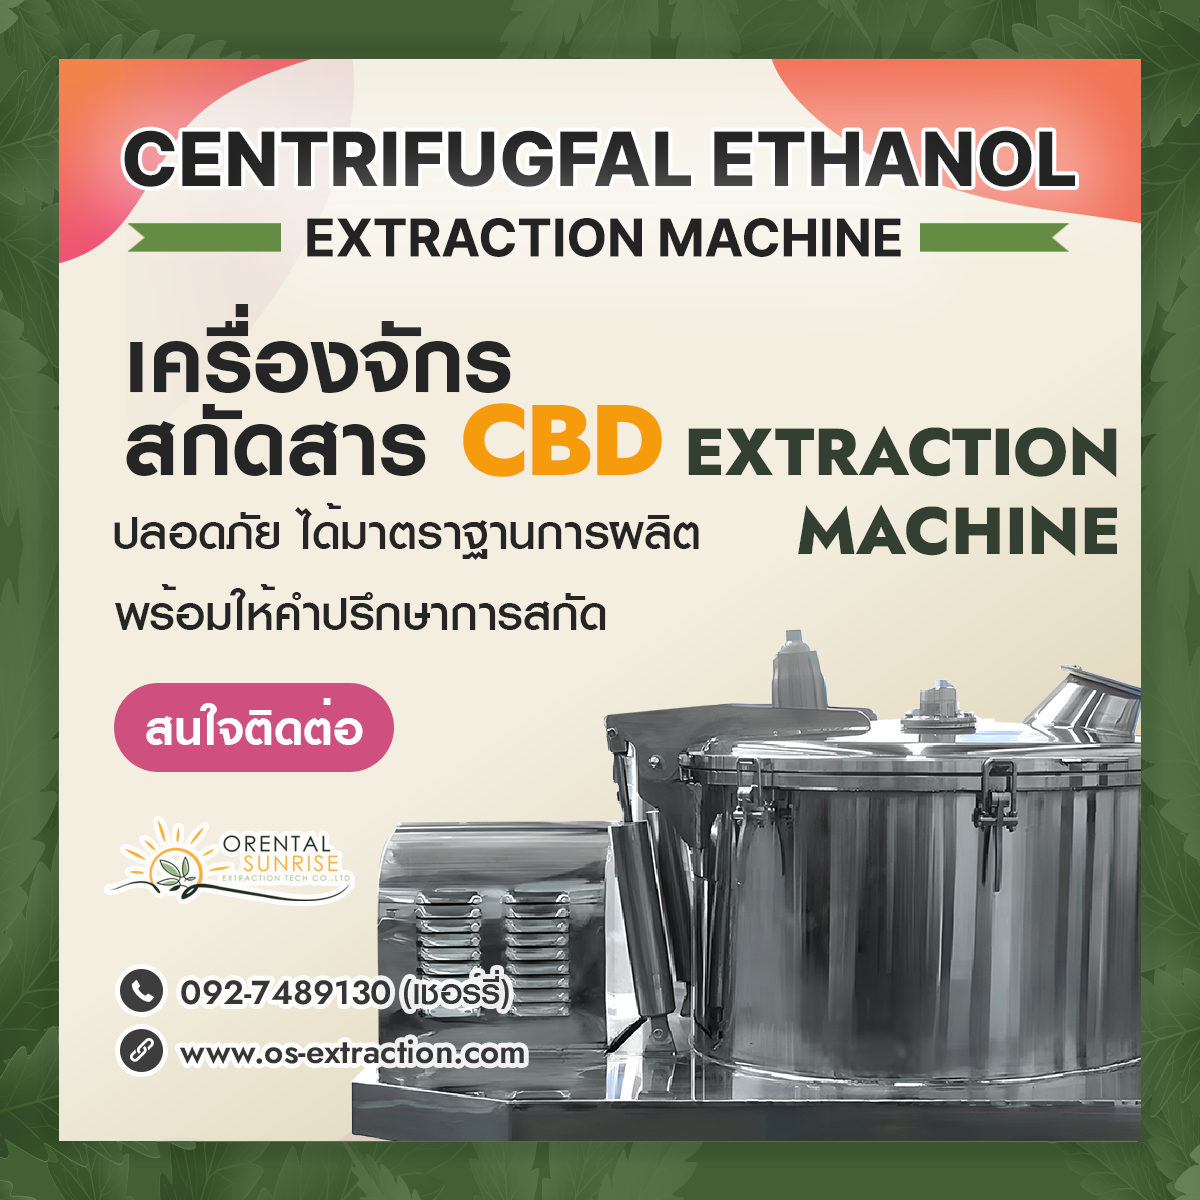 Centrifugal Ethanol Extraction Machine📌